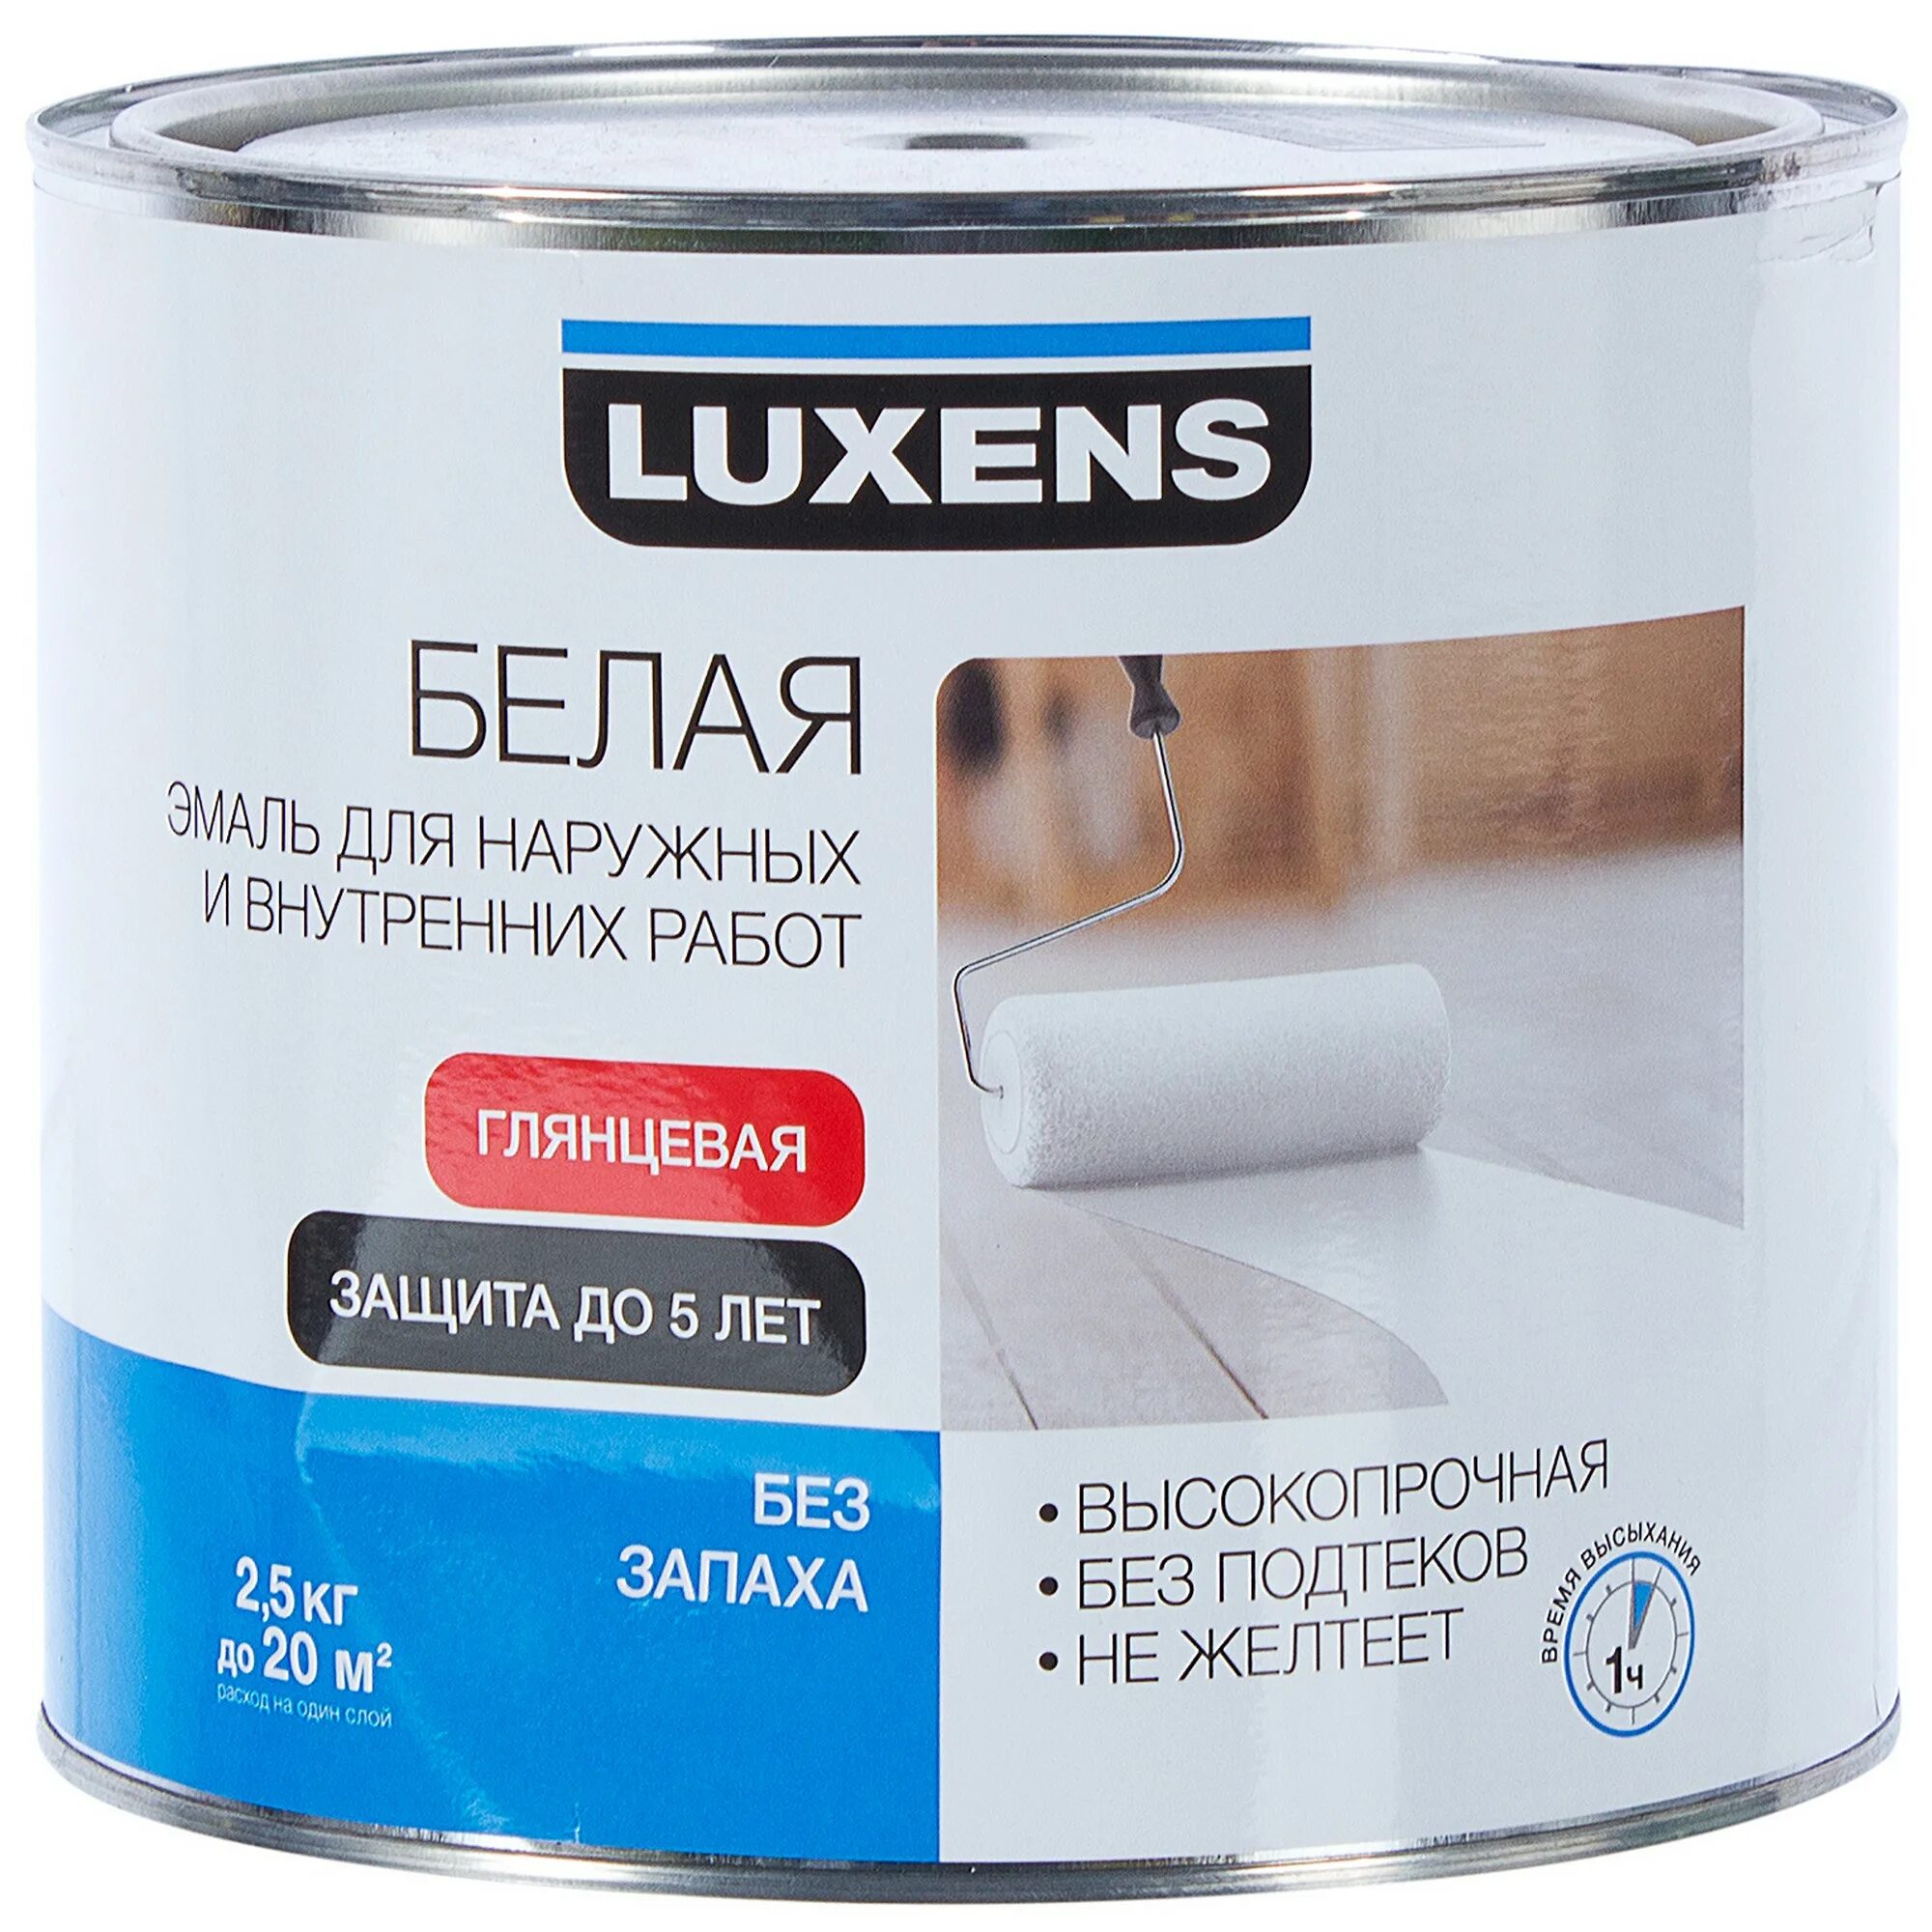 Купить краску без запаха для внутренних. Эмаль Luxens глянцевая цвет белый 2.5 кг. Эмаль универсальная Luxens 2.5 кг нежно-голубой. Эмаль акриловая Luxens глянцевая белая универсальная 2.5 кг. Luxens эмаль.